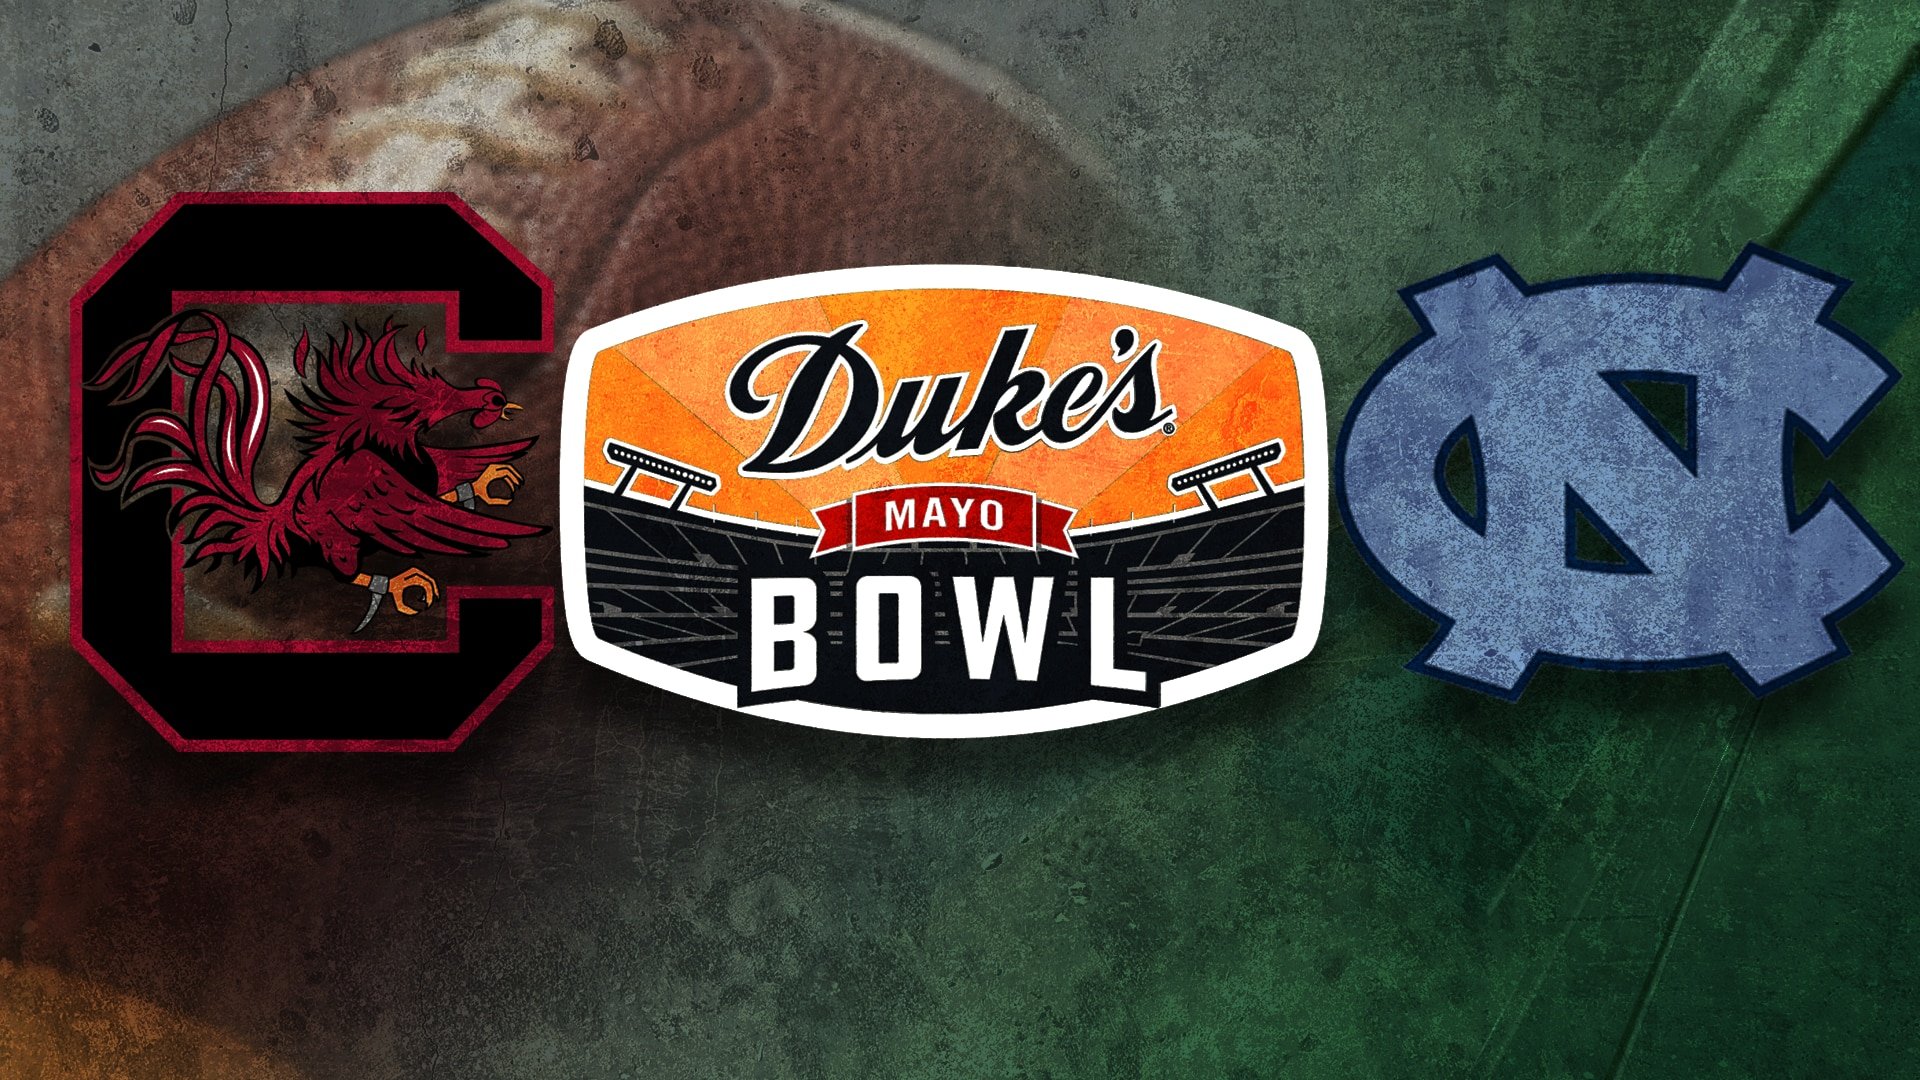 Duke's Mayo Bowl Everything You Need to About UNC vs USC Carolina Blitz